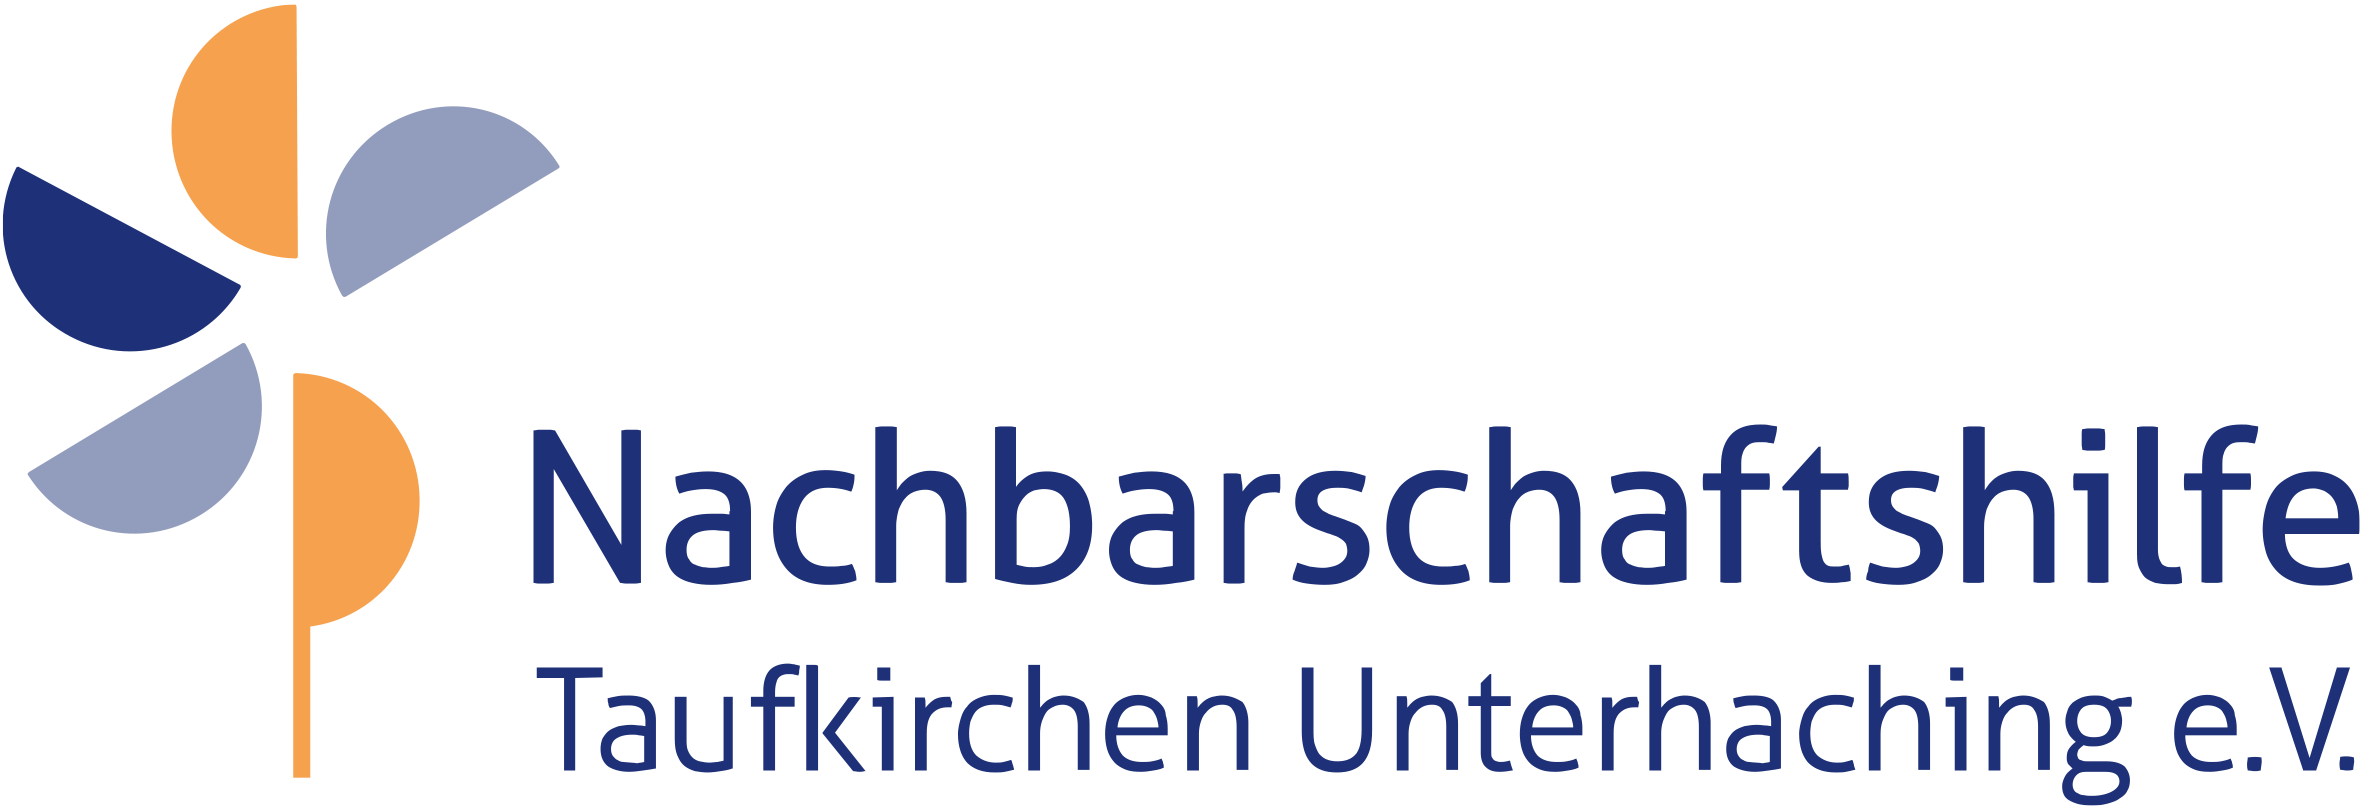 Nachbarschaftshilfe Taufkirchen Unterhaching - Patenschaften für Senioren